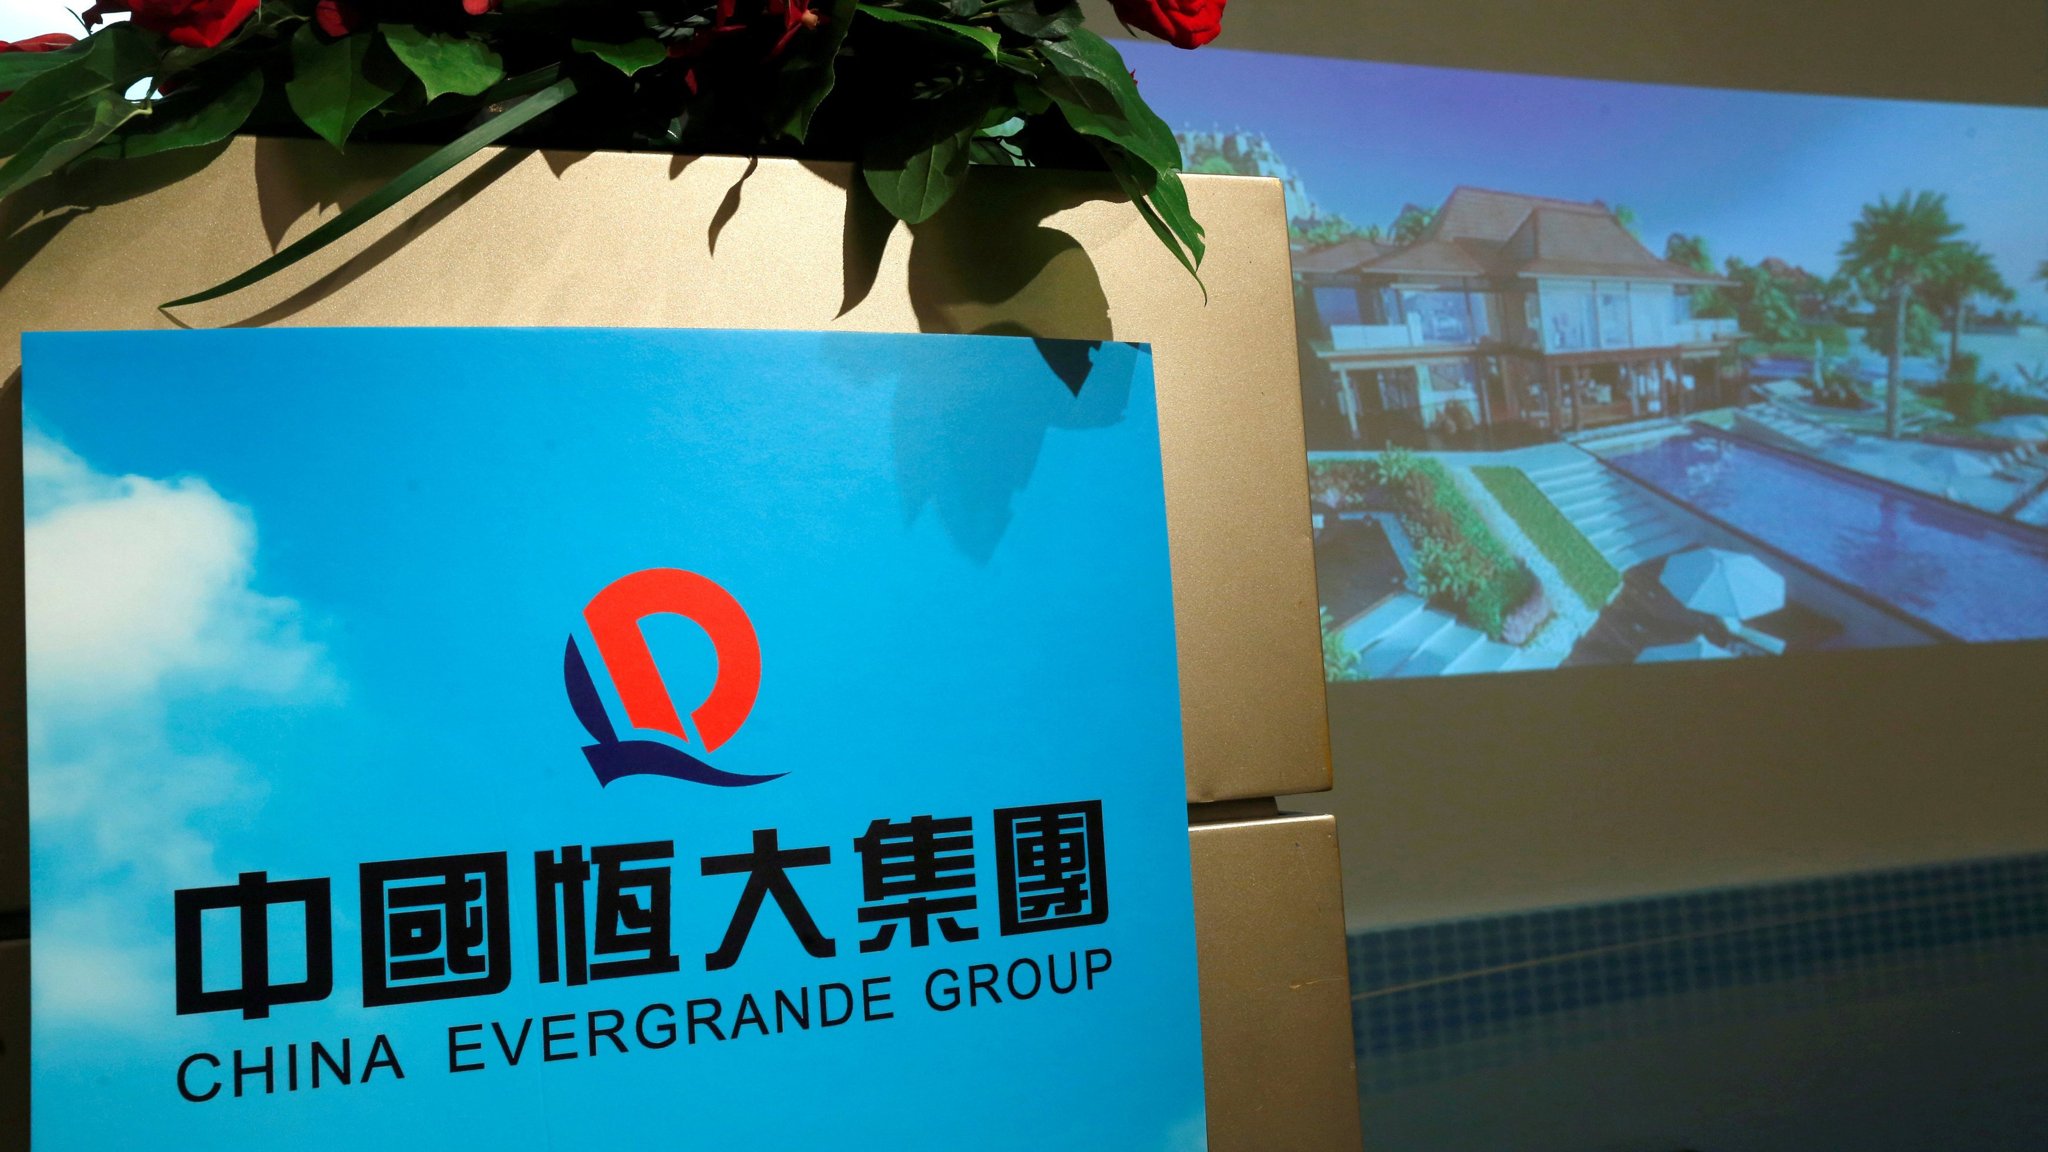 گروه اِوِرگرند (Evergrande Group) چین، دو خودروسازی NEVS و Saab را خرید.